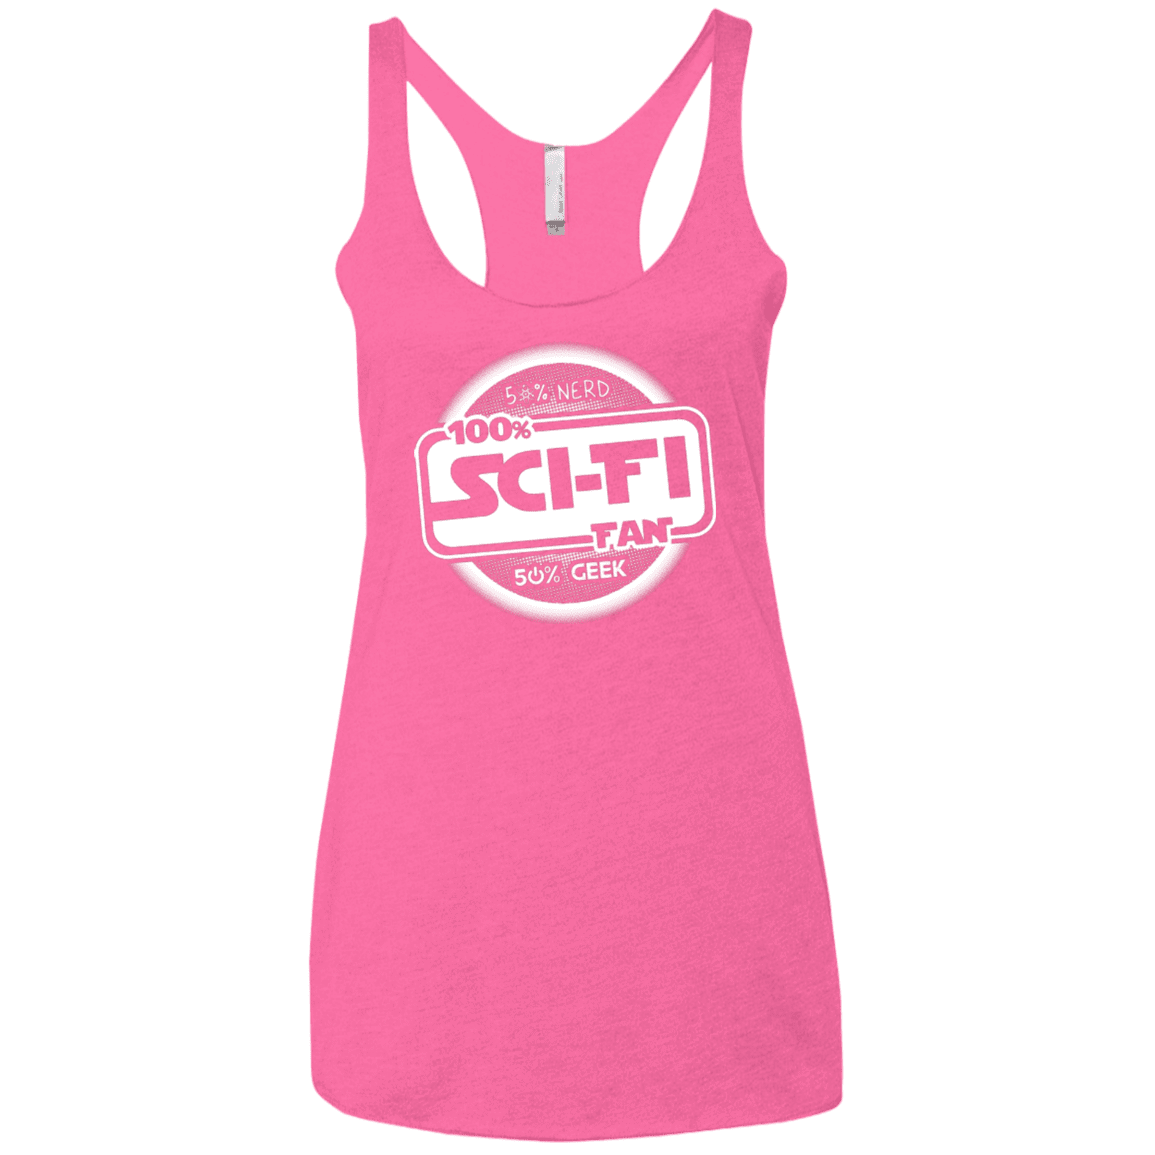 T-Shirts Vintage Pink / X-Small 100 Percent Sci-fi Women's Triblend Racerback Tank